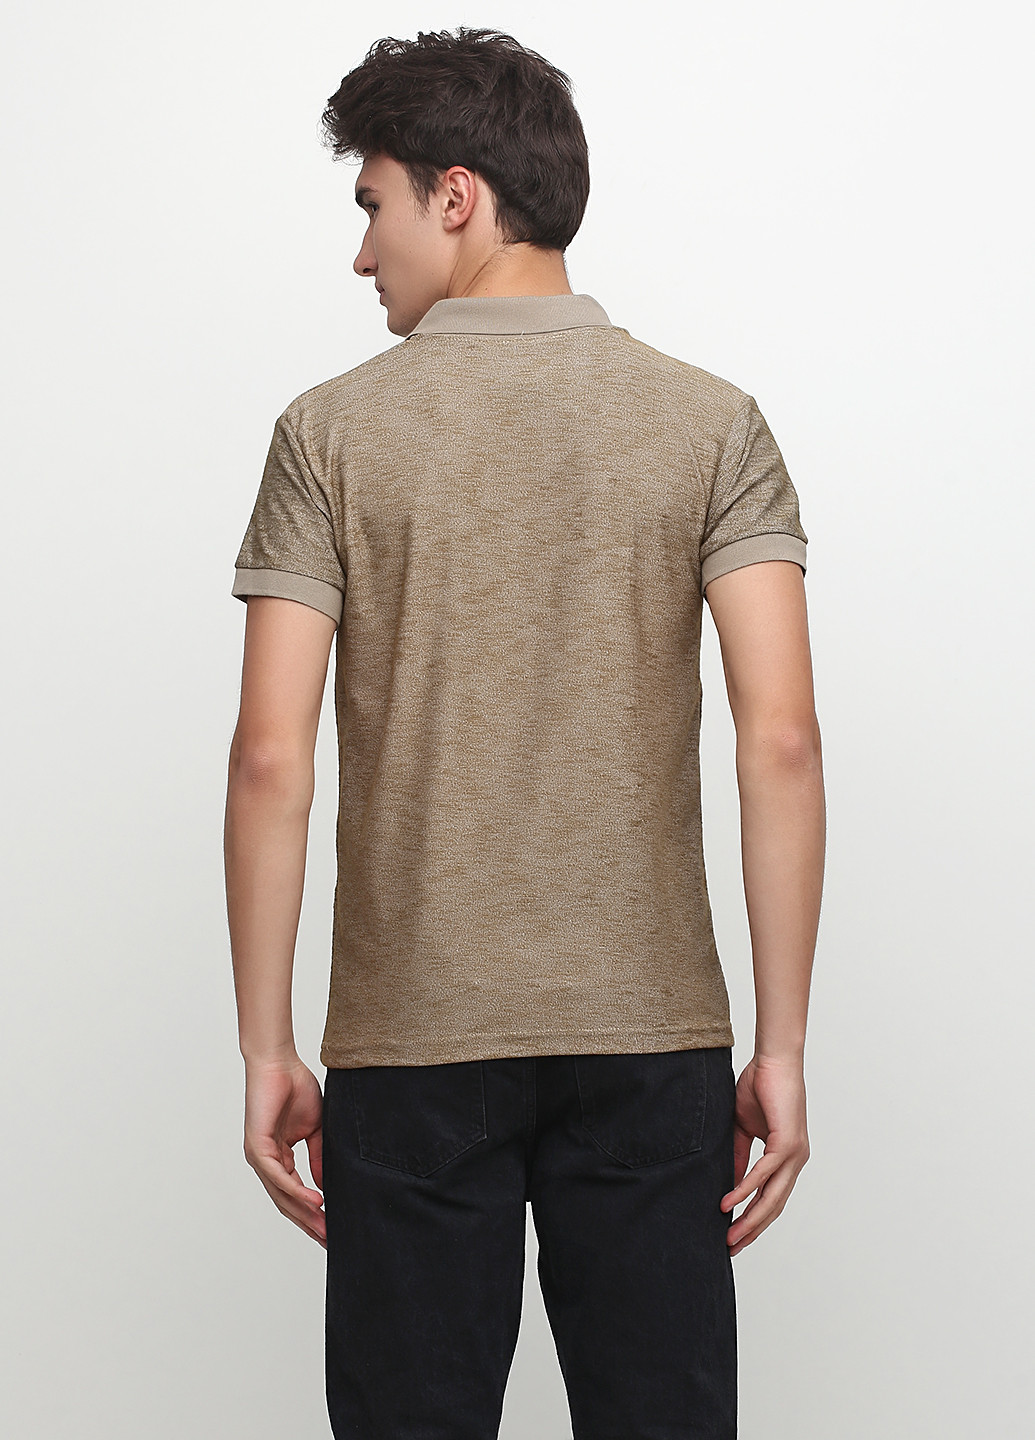 Бледно-коричневая футболка-поло для мужчин Chiarotex меланжевая